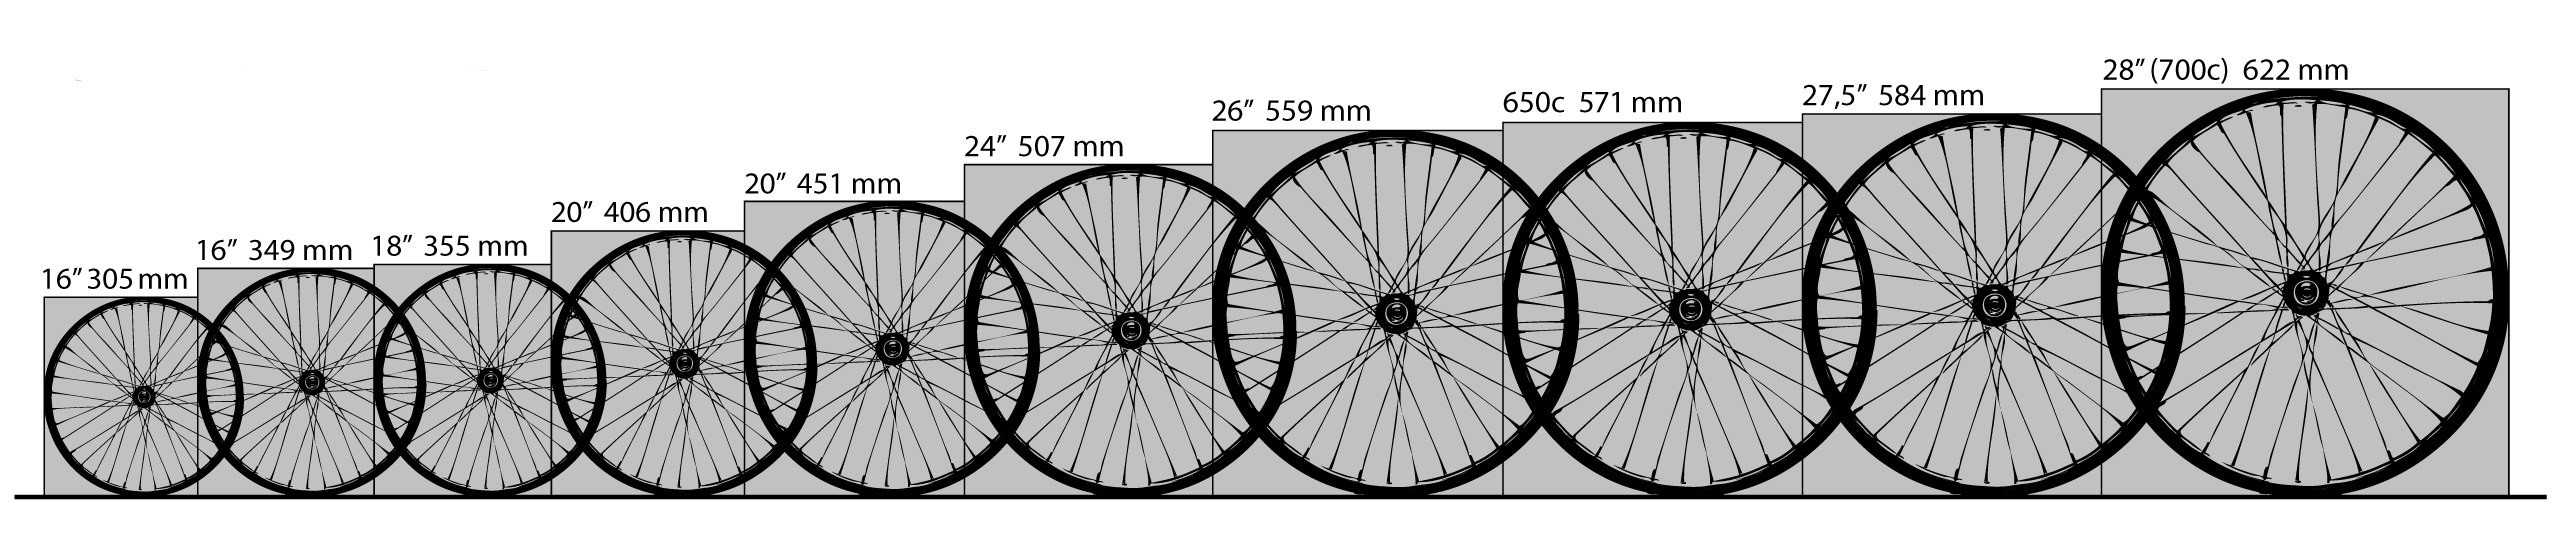 Определение размера (диаметра) велосипедного колеса